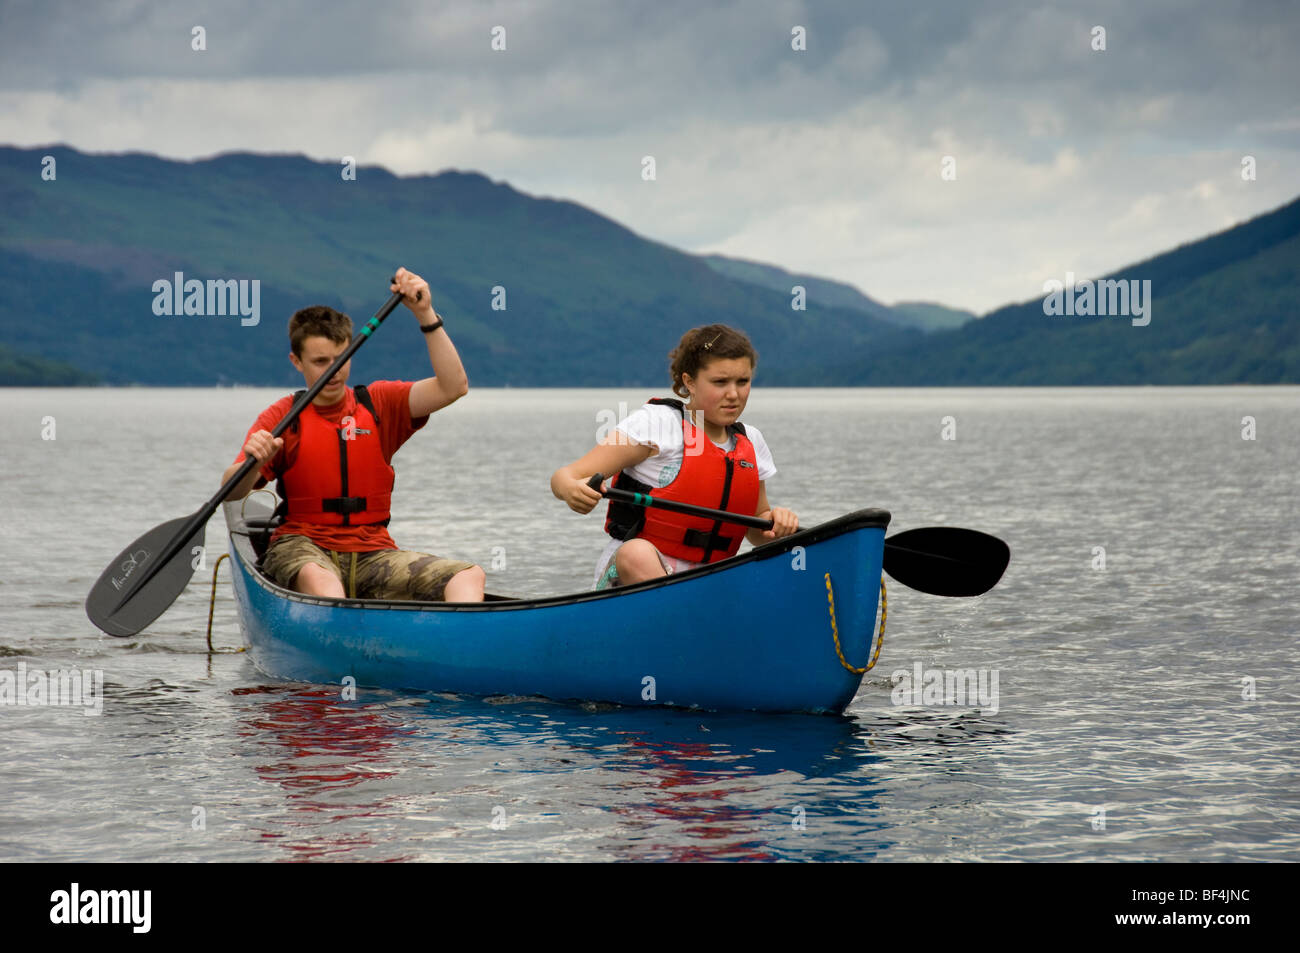 Un jeune homme et une jeune femme caucasien portant des gilets de sauvetage rouges pagayant un canot canadien bleu sur le Loch Earn, dans le Perthshire, en Écosse. ROYAUME-UNI Banque D'Images